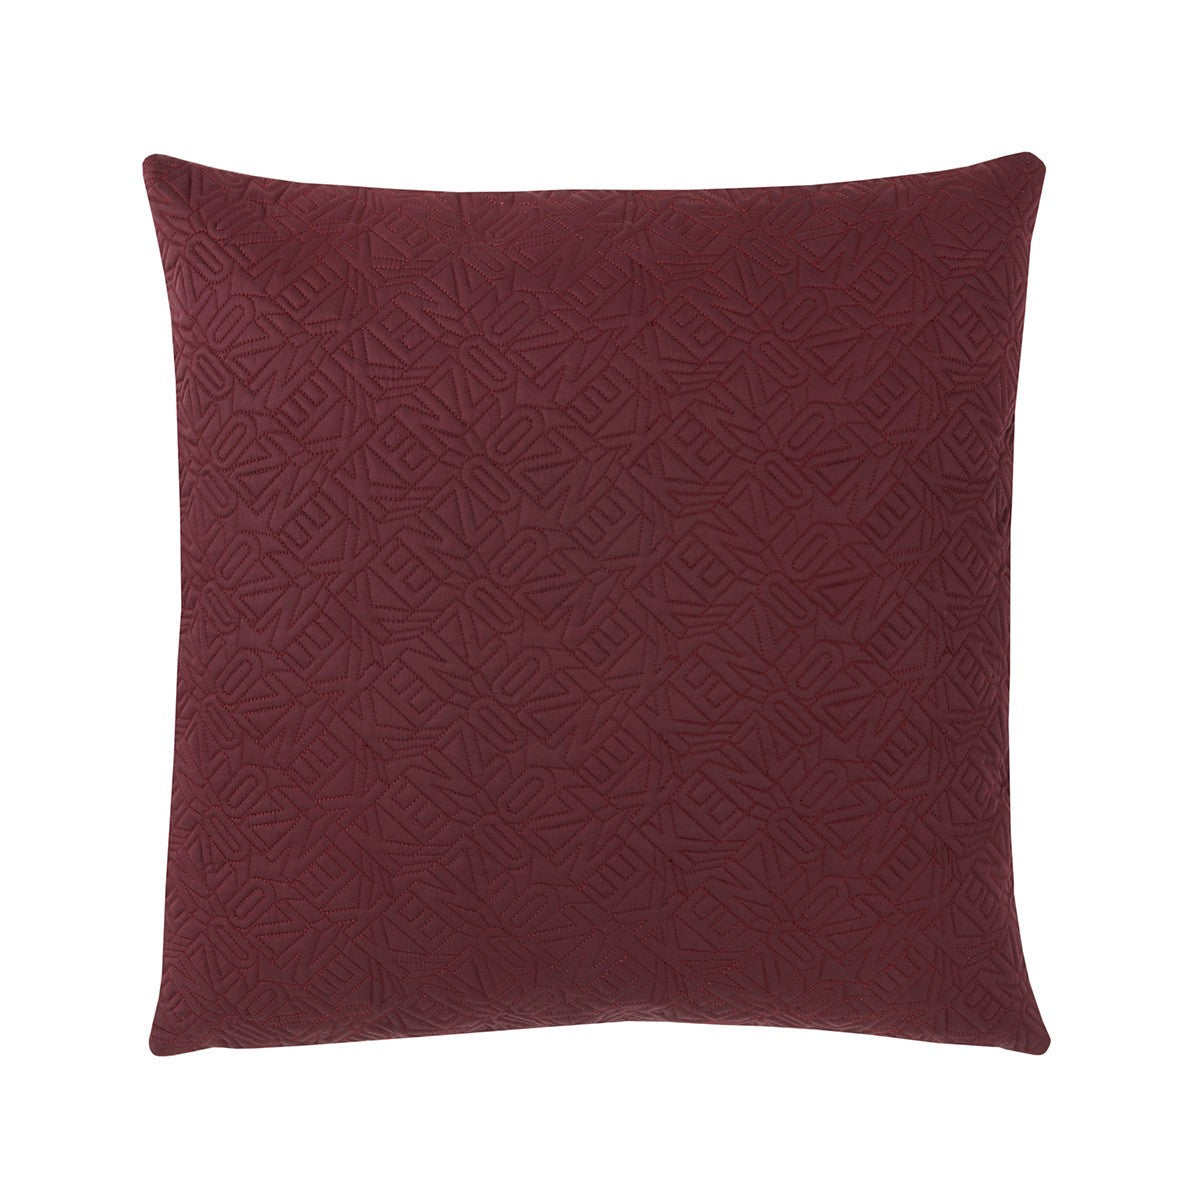 KZ Iconic Burgundy Cushion